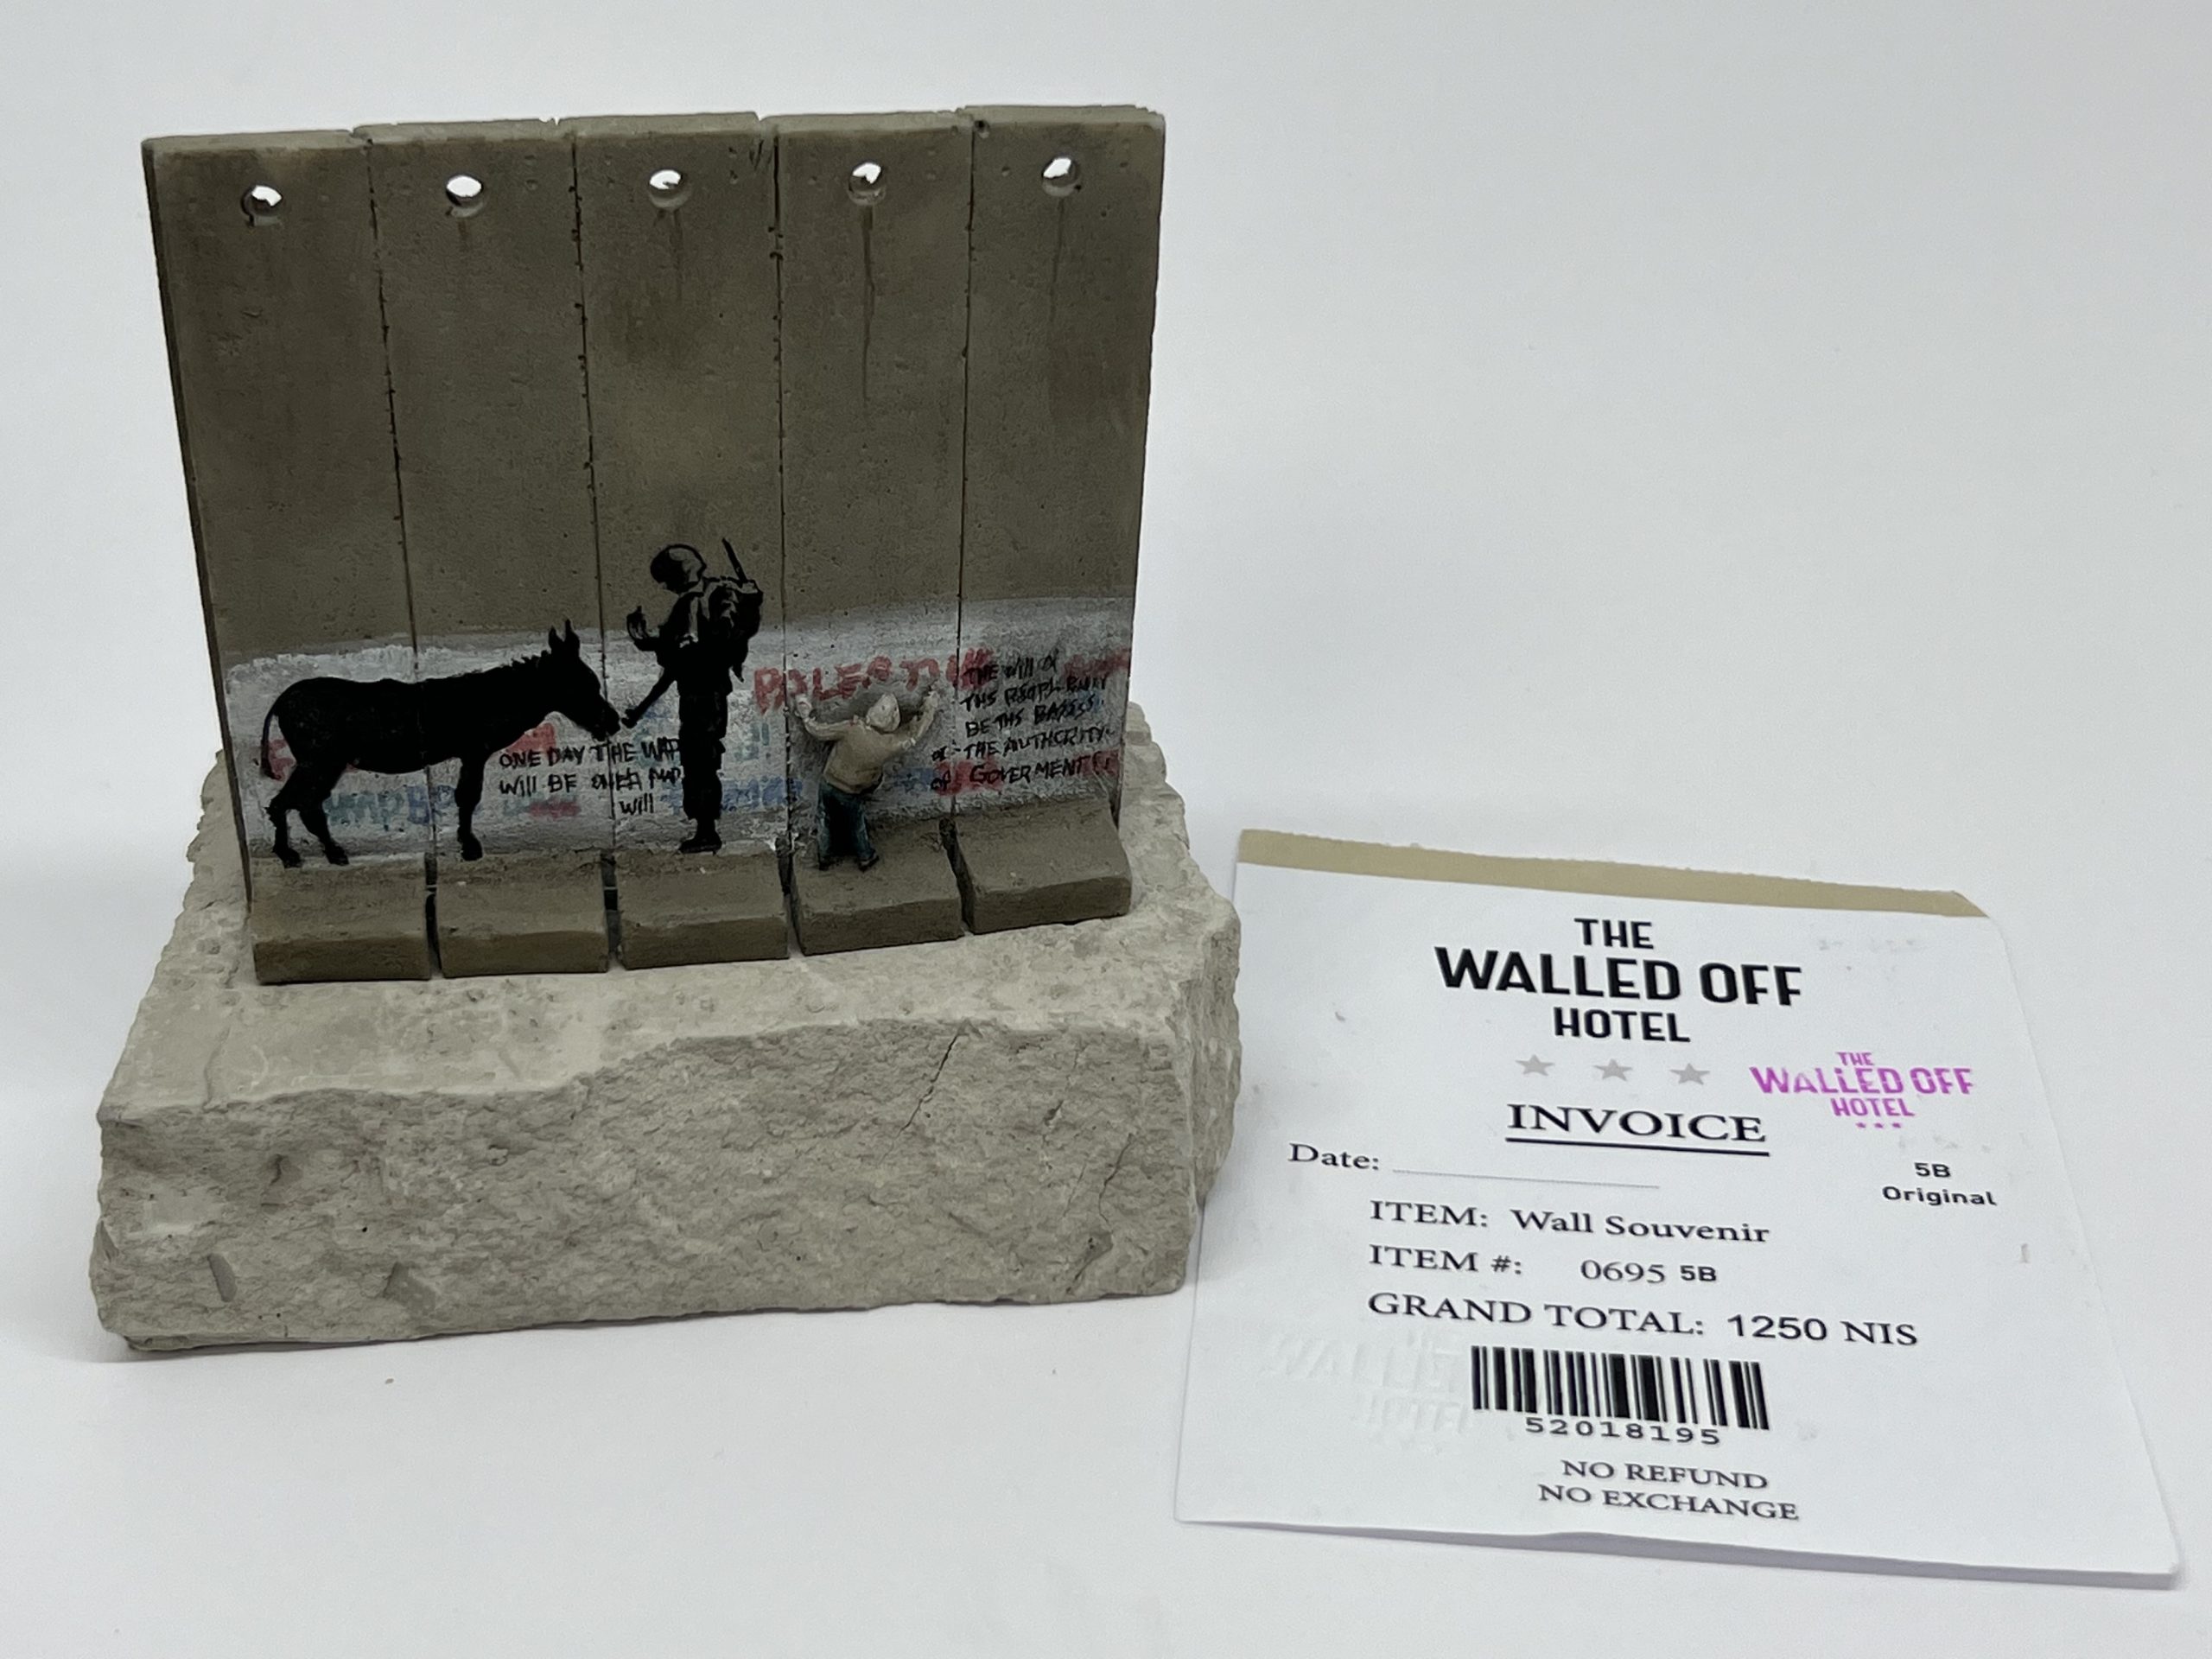 Banksy donkey documents sculpture